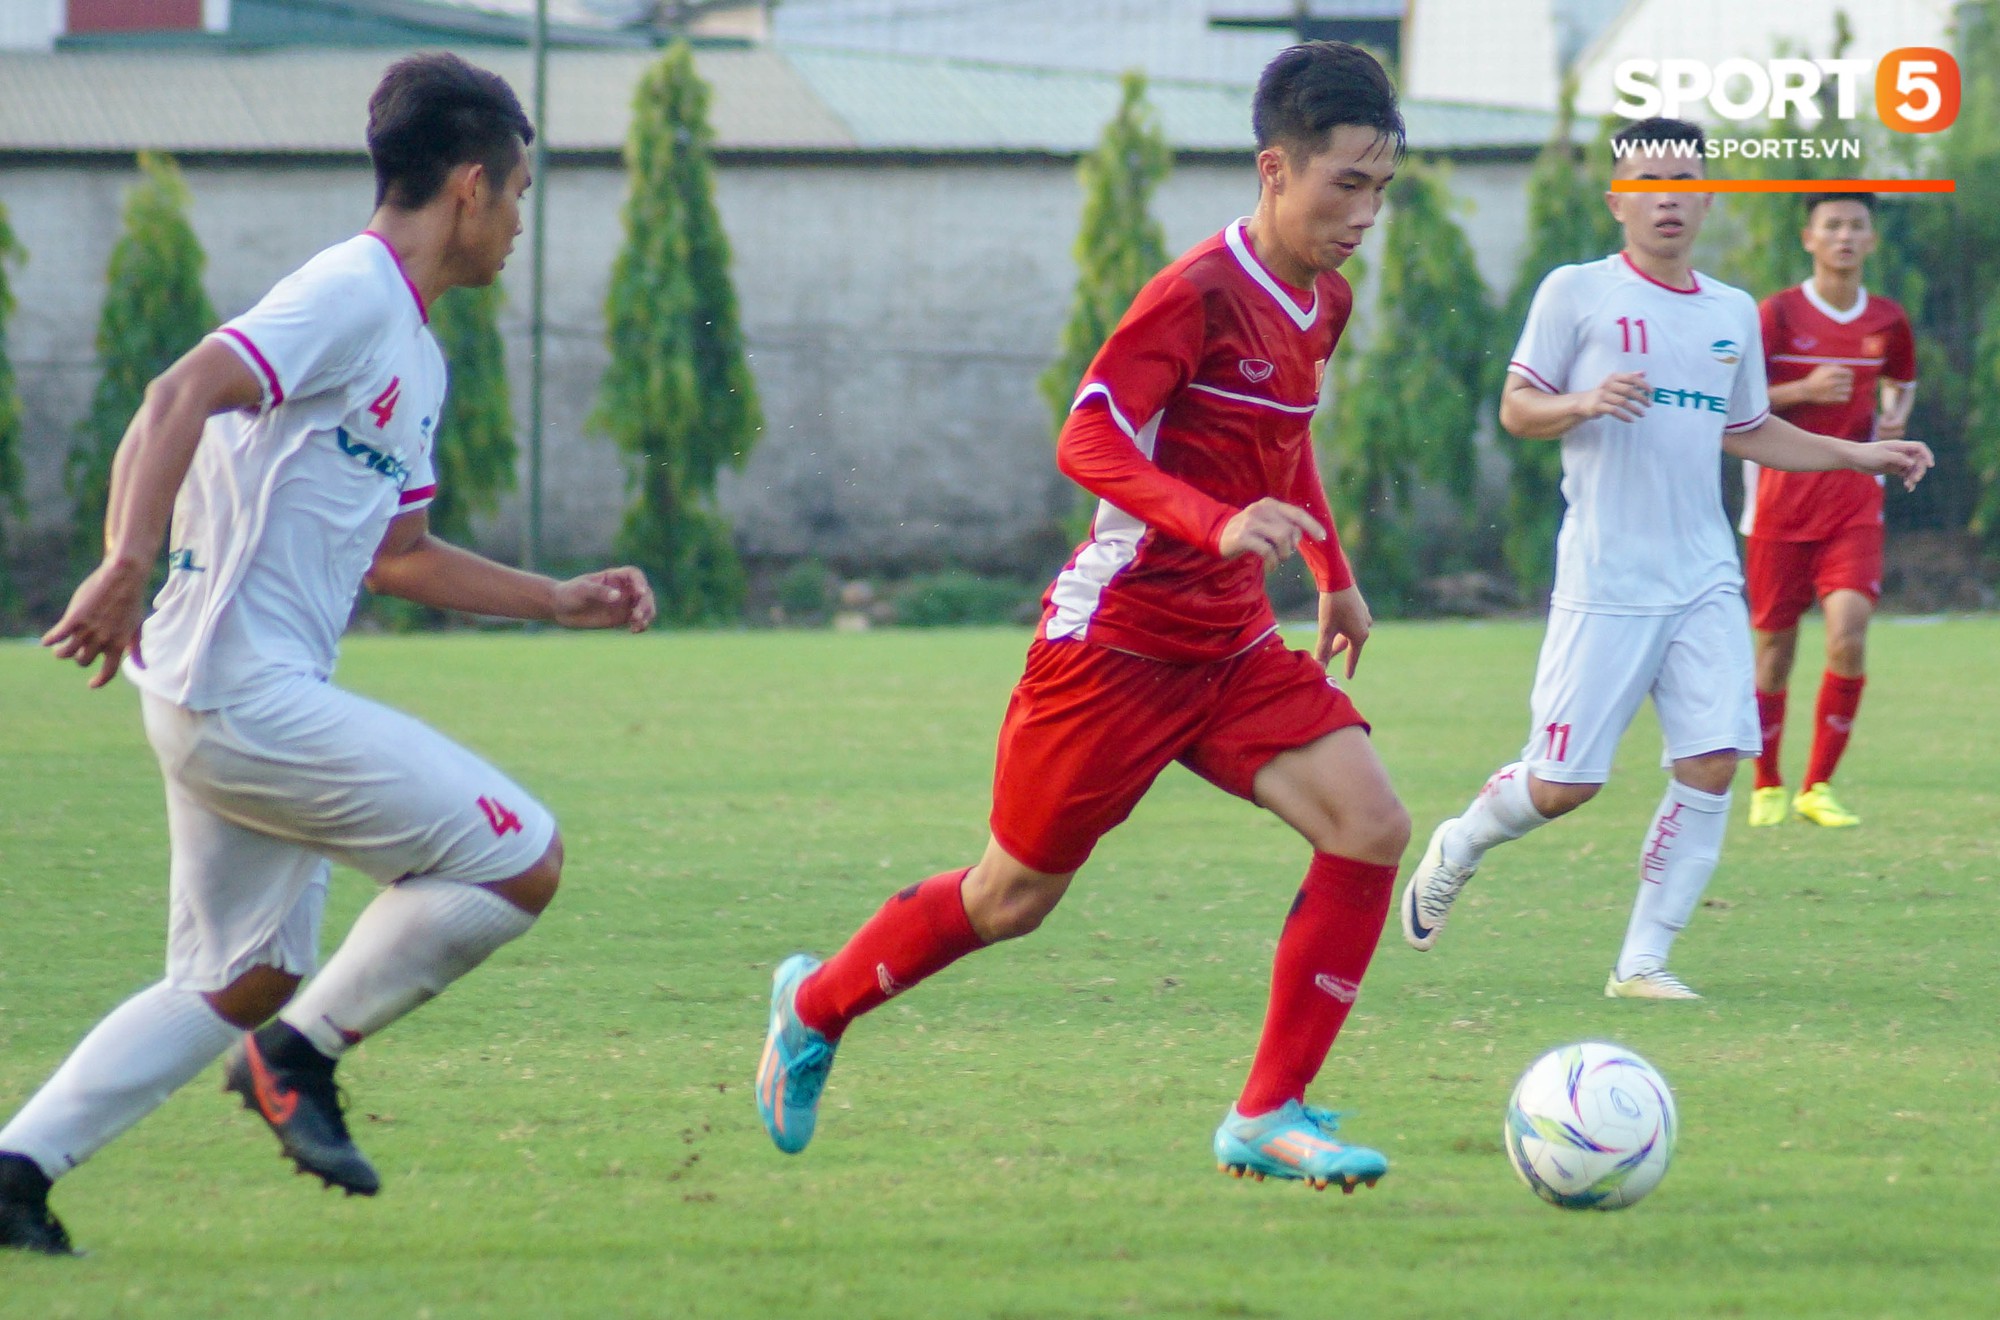 Thất bại trước đàn em của Trọng Đại, U16 Việt Nam vẫn được khen ngợi - Ảnh 6.